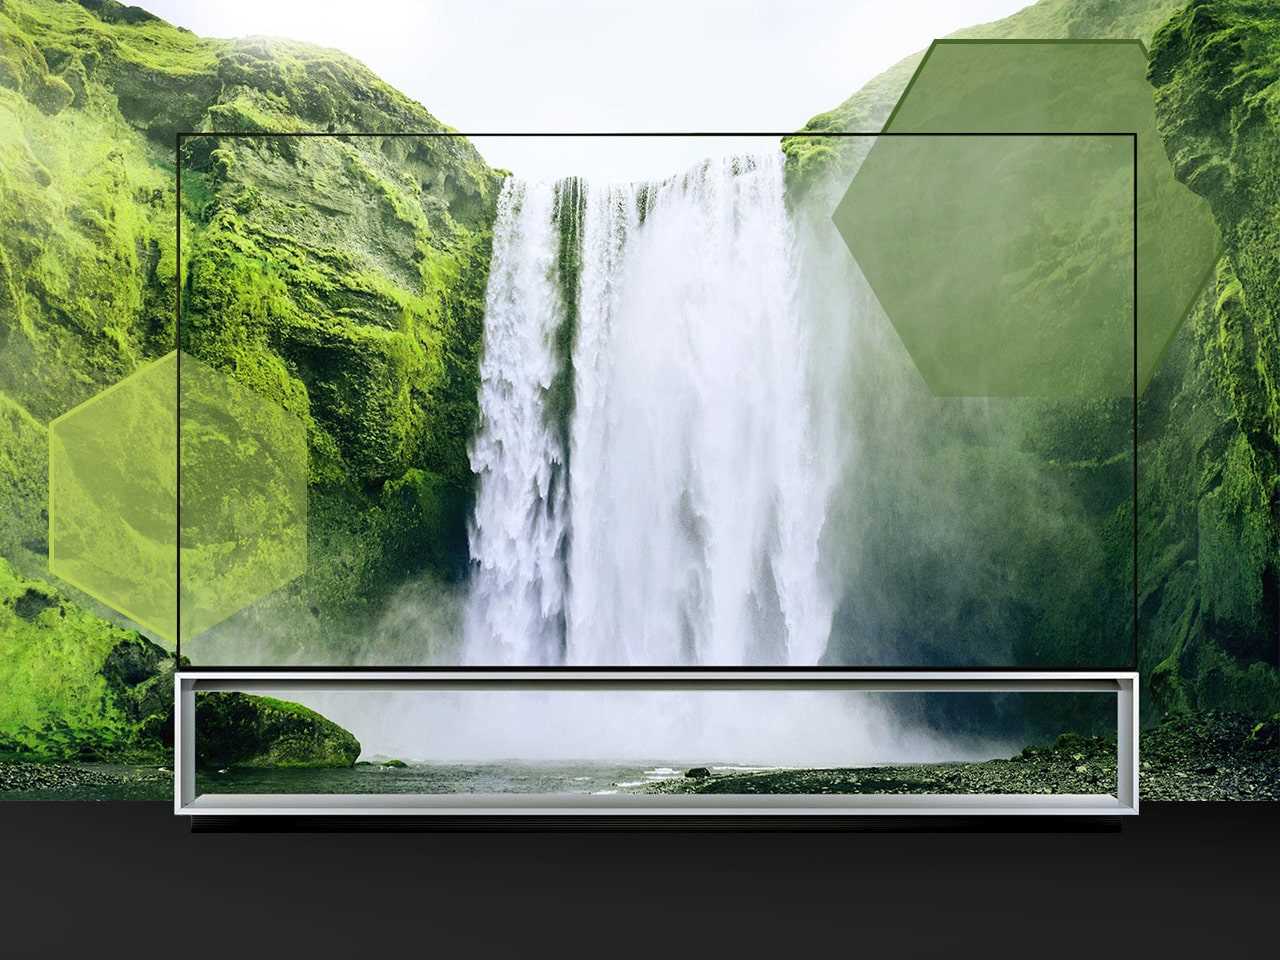 LG_MAG_Banner_TV-8K-OLED-Z9_20.02.2020_1280x960px-min.jpg